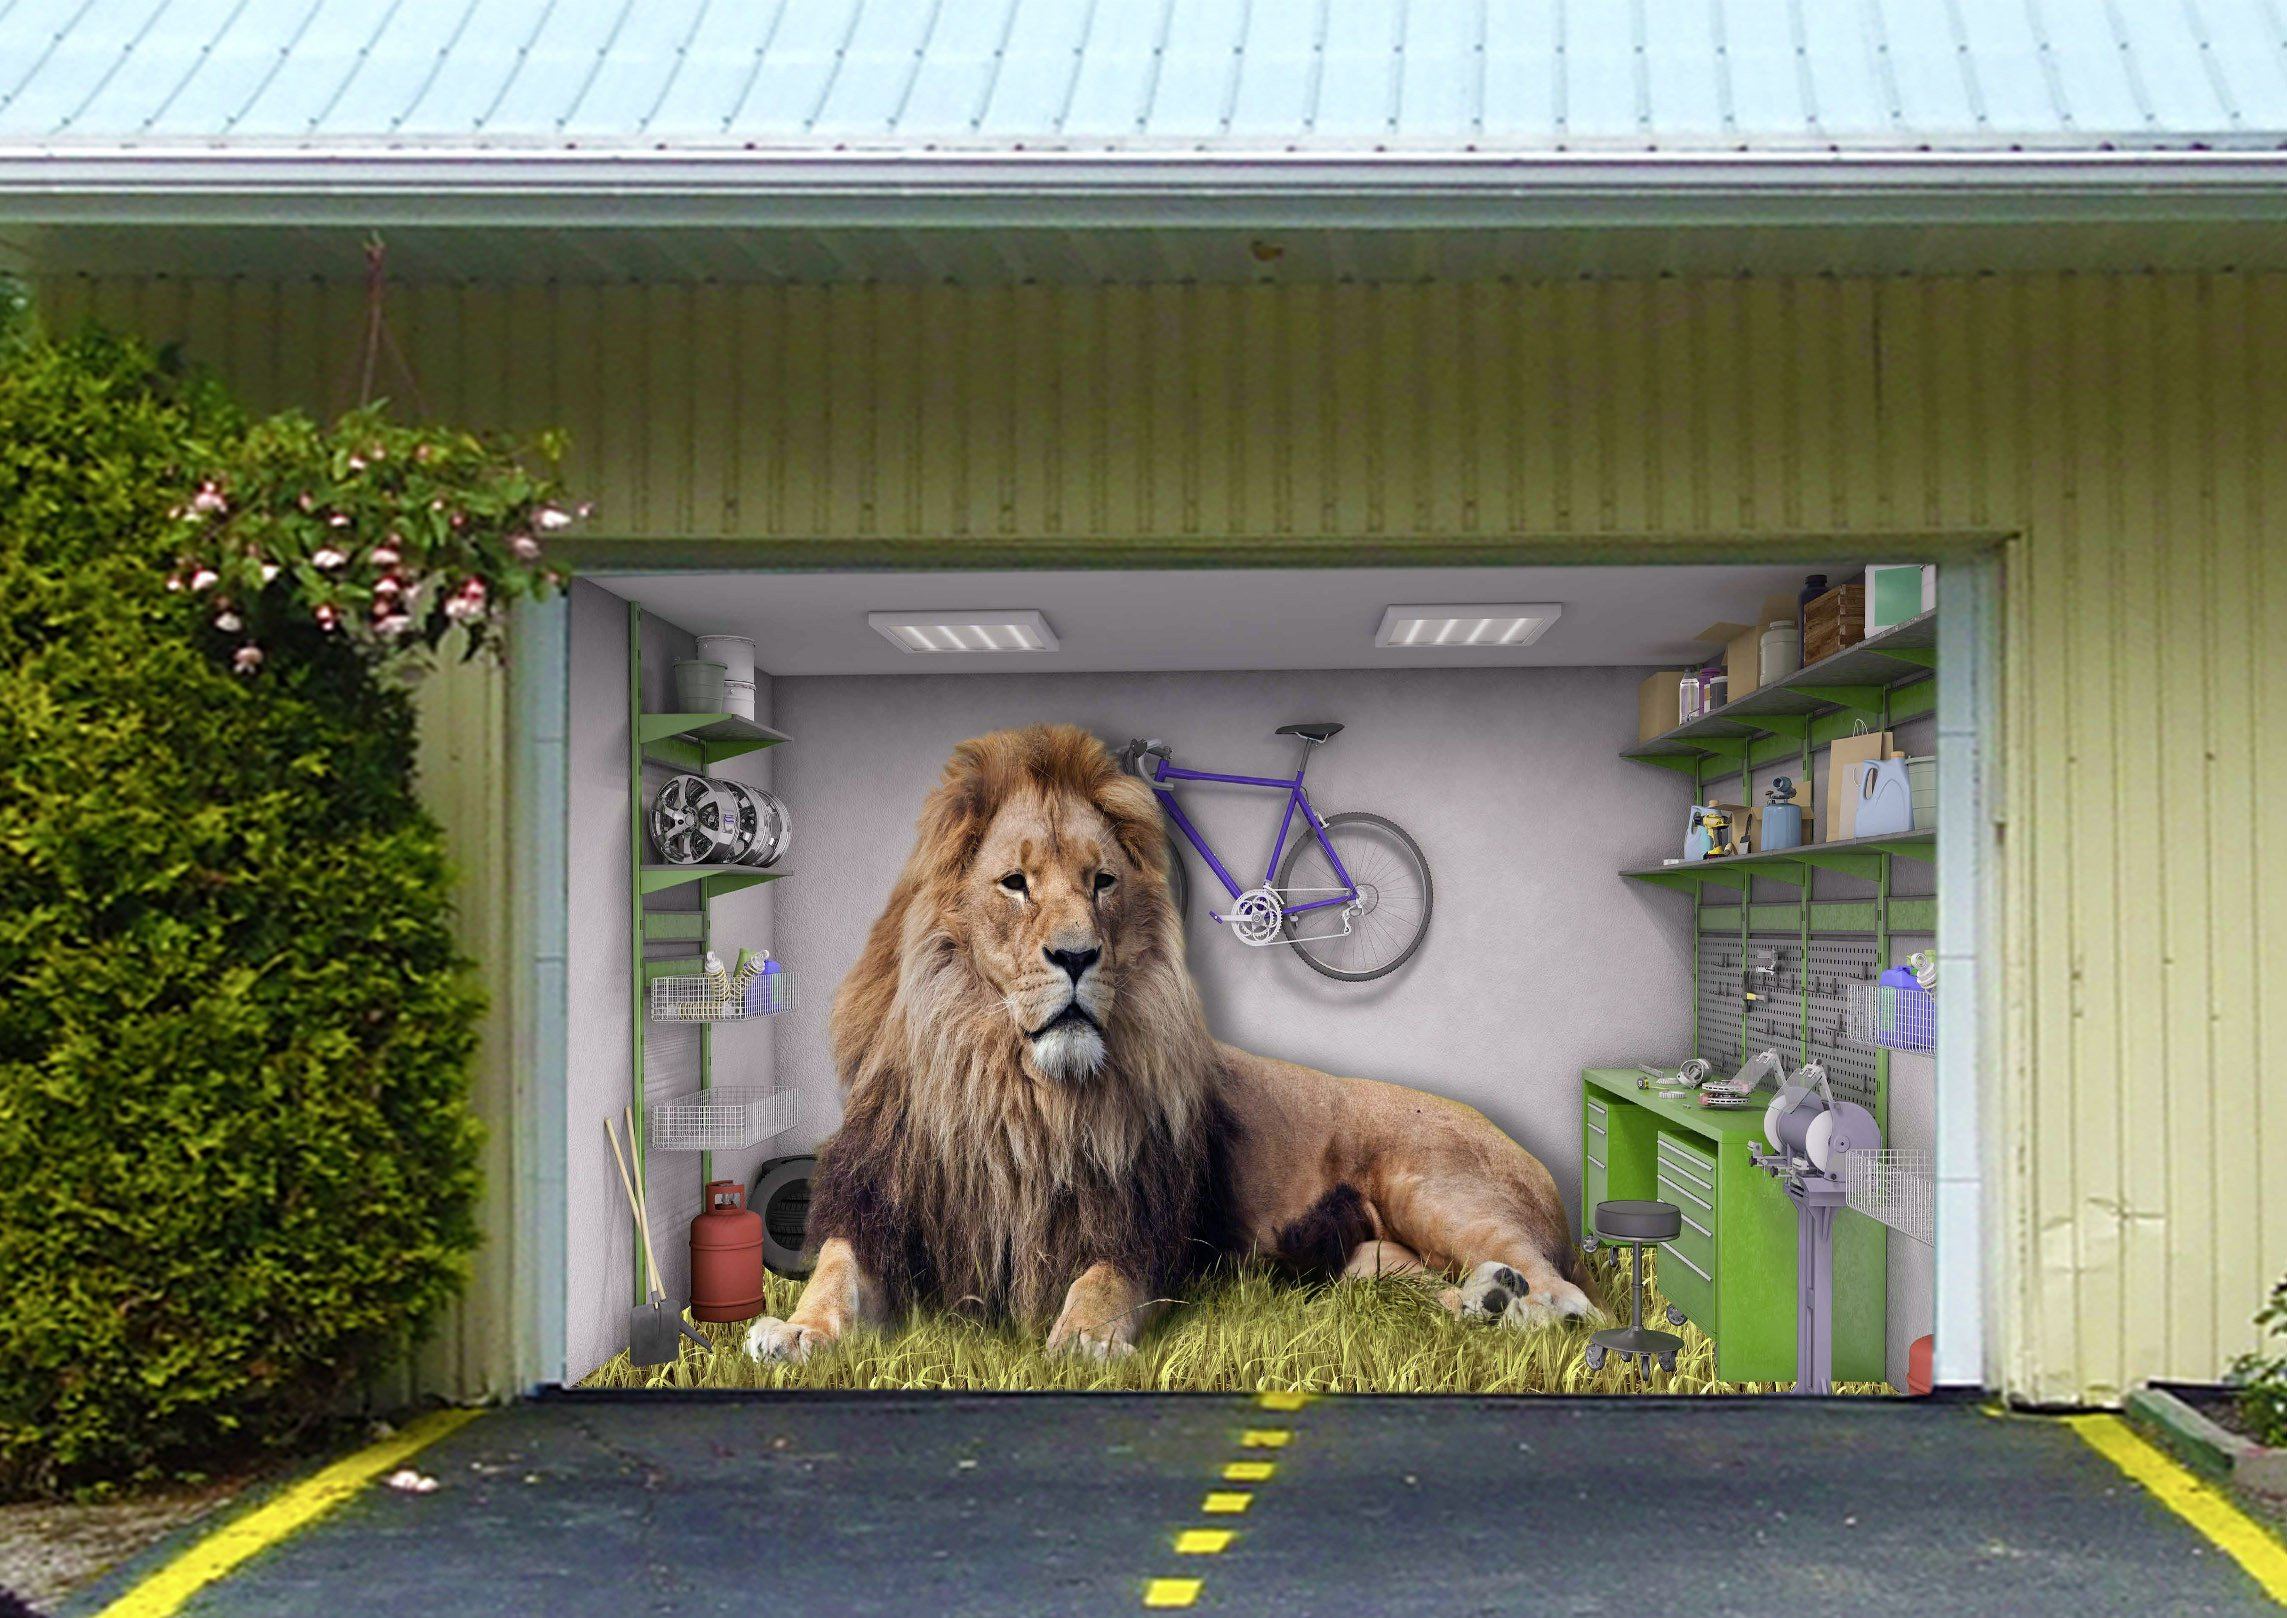 3D Big Lion 408 Garage Door Mural Wallpaper AJ Wallpaper 